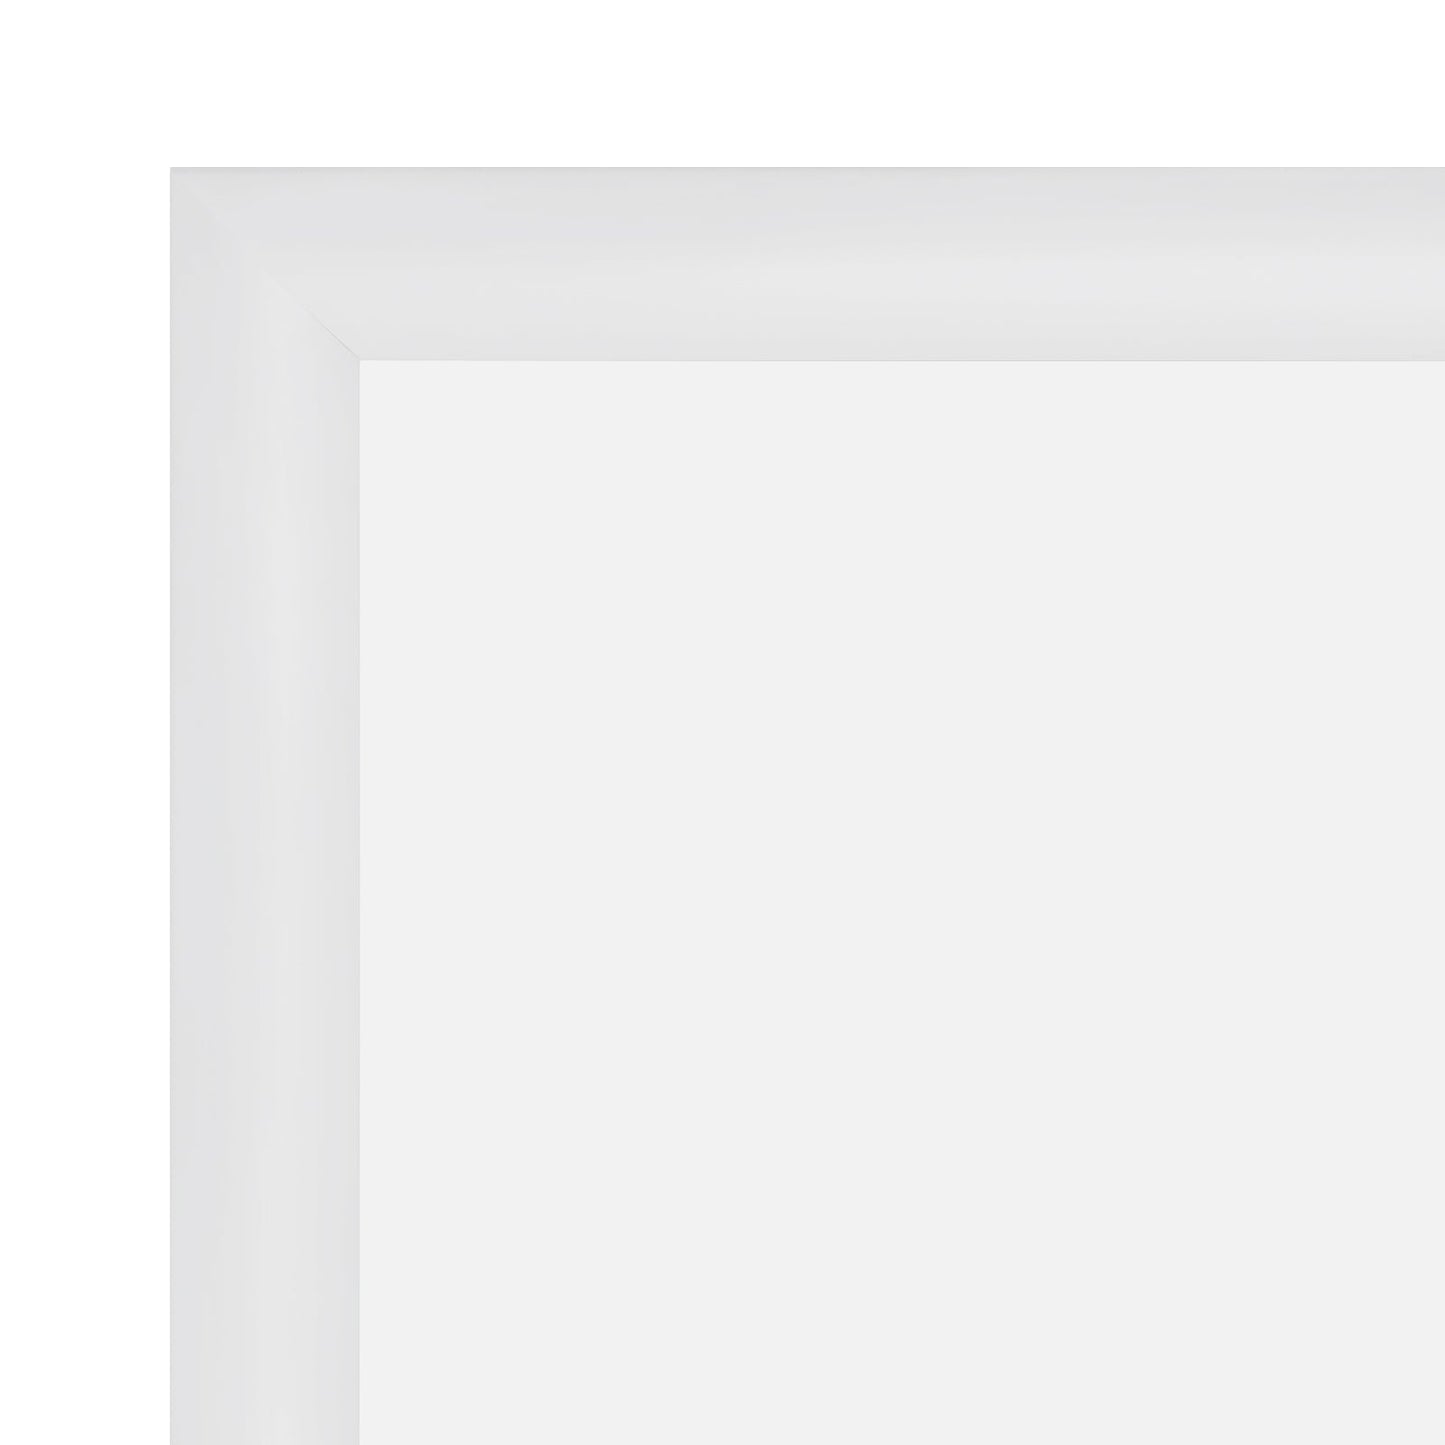 12x18 White SnapeZo® Snap Frame - 1.2" Profile